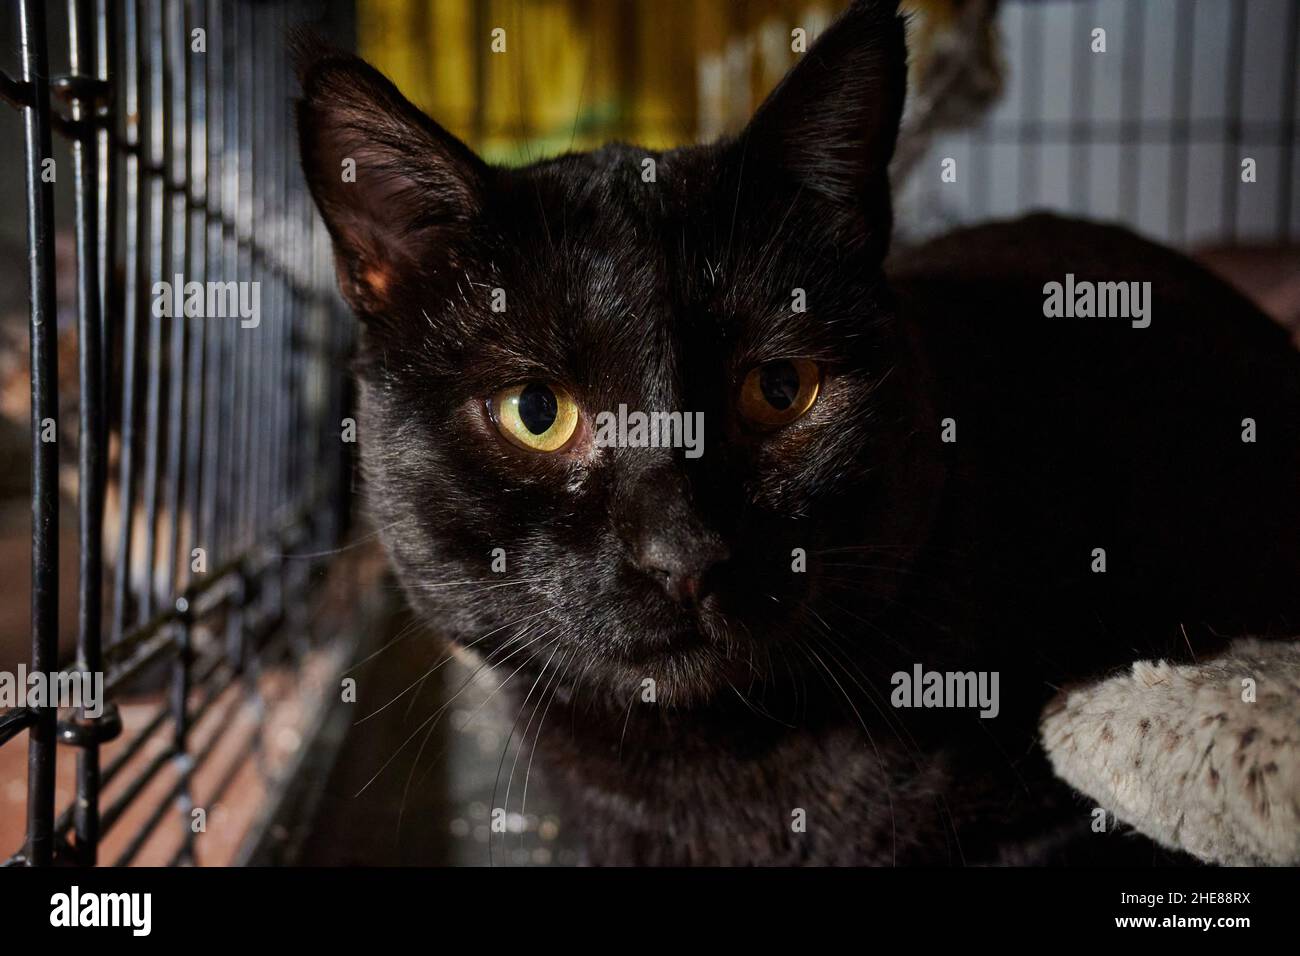 Ritratto di un gatto nero carino fissando lo spettatore con grandi occhi arancioni mentre si siede nella gabbia Foto Stock